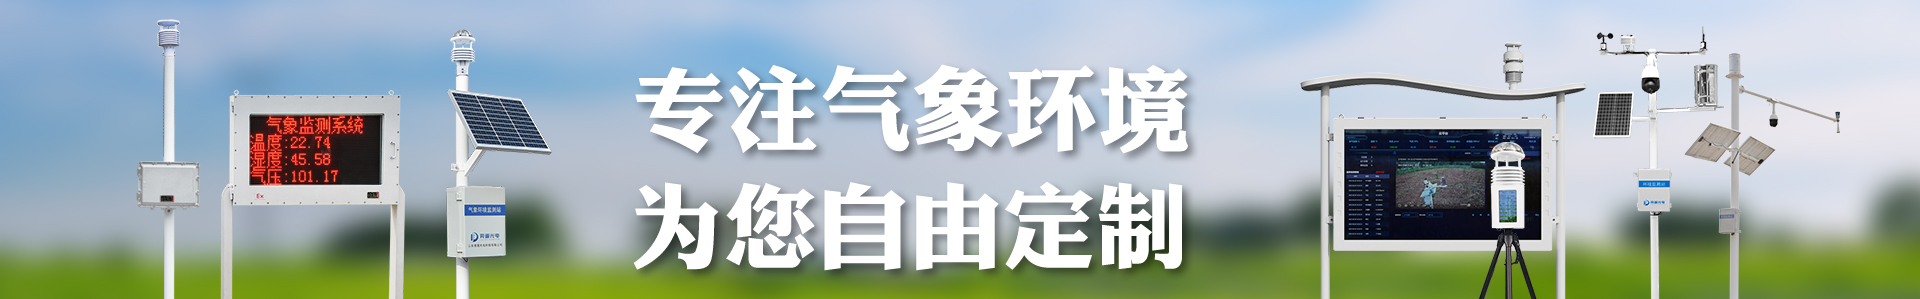 风蚀监测系统-自动气象站-小型气象站-防爆气象站-光伏气象站-南宫NG·28(中国)官方网站